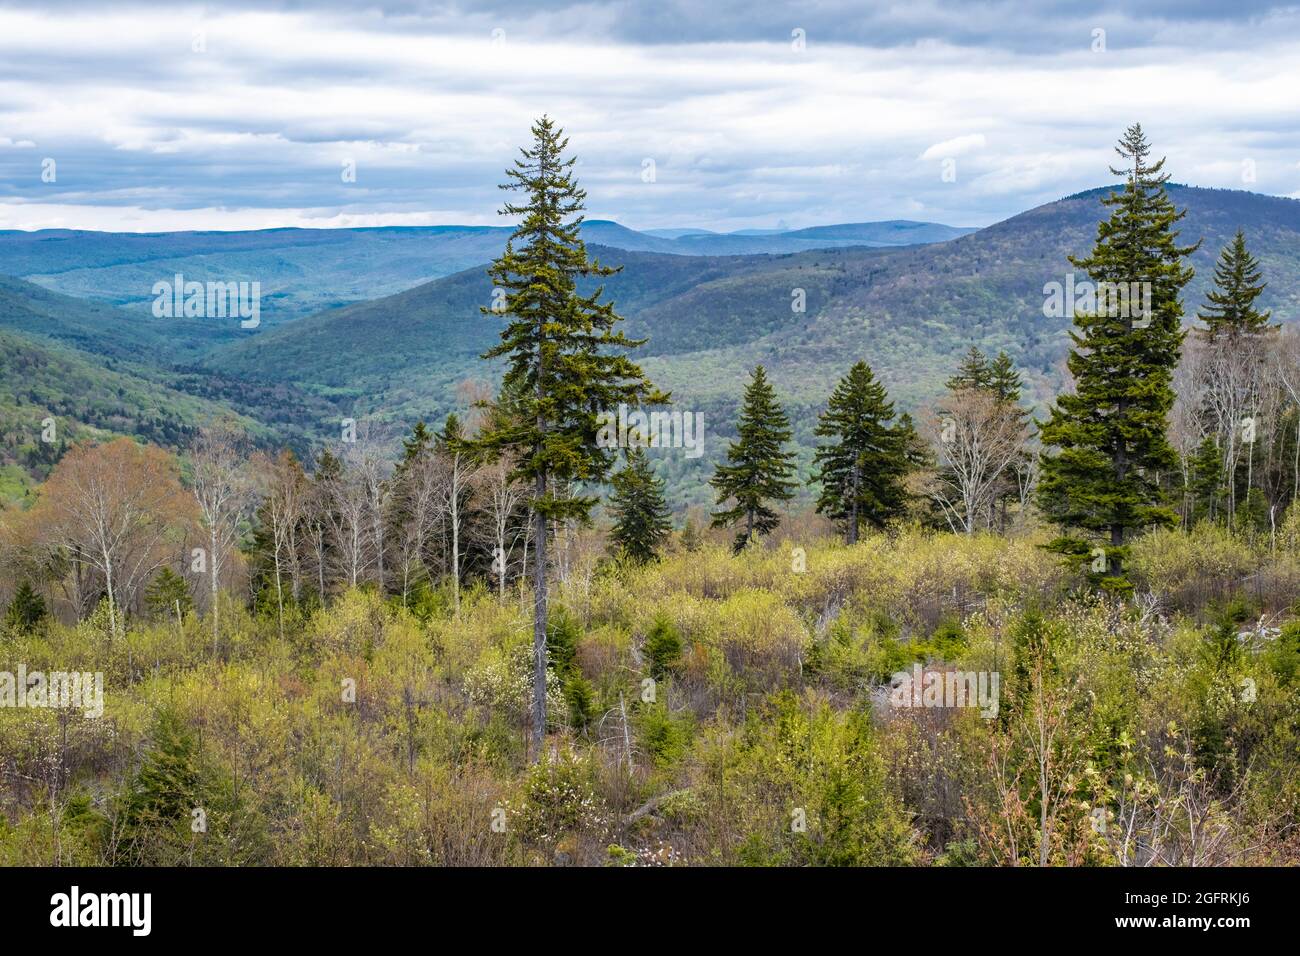 West Virginia Scenic Overlook, State Highway 150, montrant une nouvelle croissance après la coupe claire de la forêt. Fin du printemps. Banque D'Images